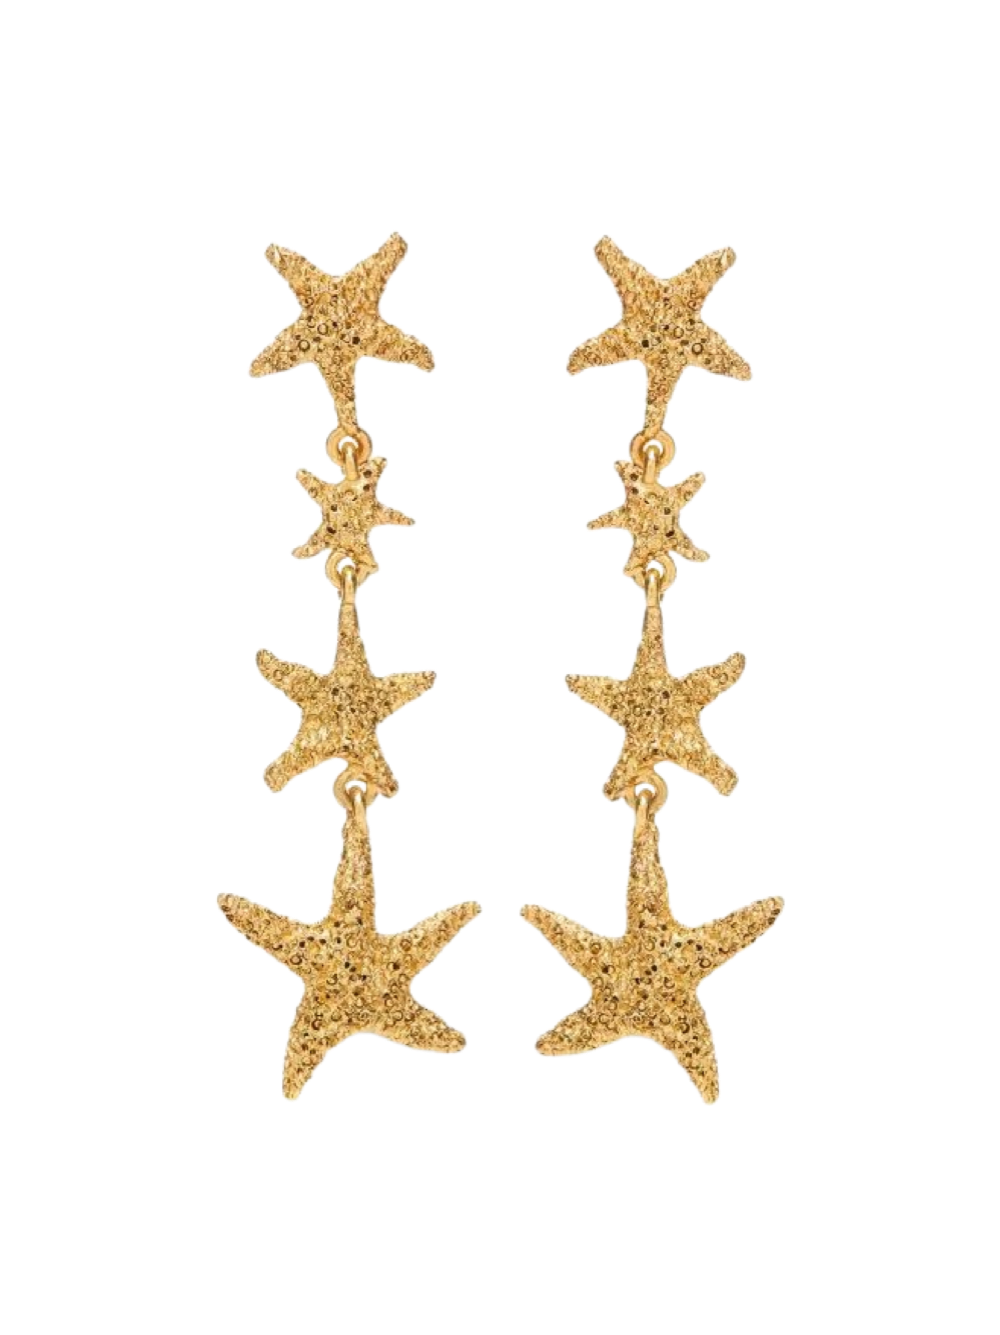 Oscar de la Renta Starfish Chandlier Earrings in Gold